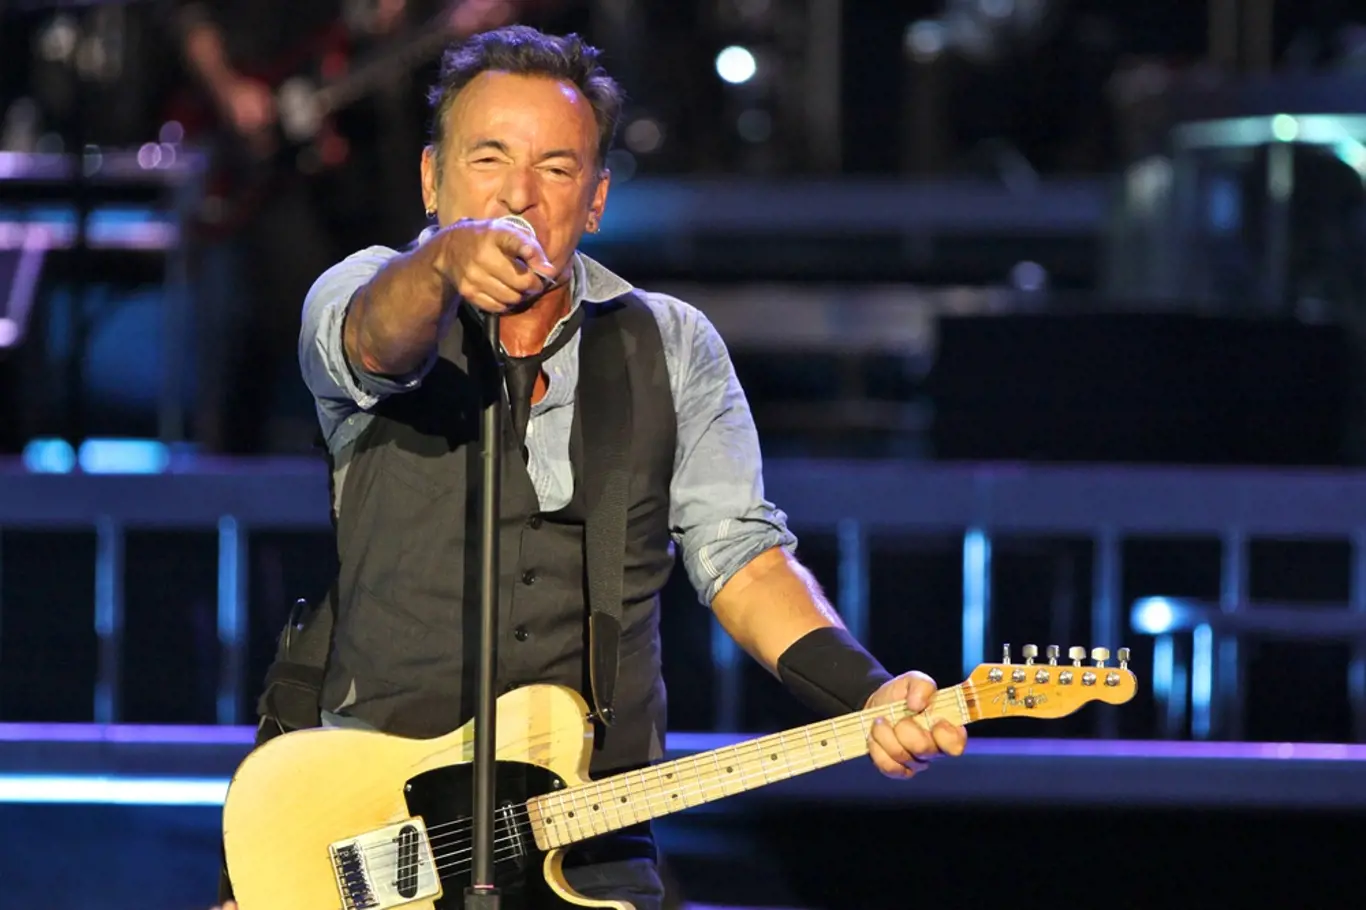 Bruce Springsteen v roce 2016 jede svoje turné s názvem The River Tour, při němž odehraje 75 koncertů v Evropě a Severní Americe.